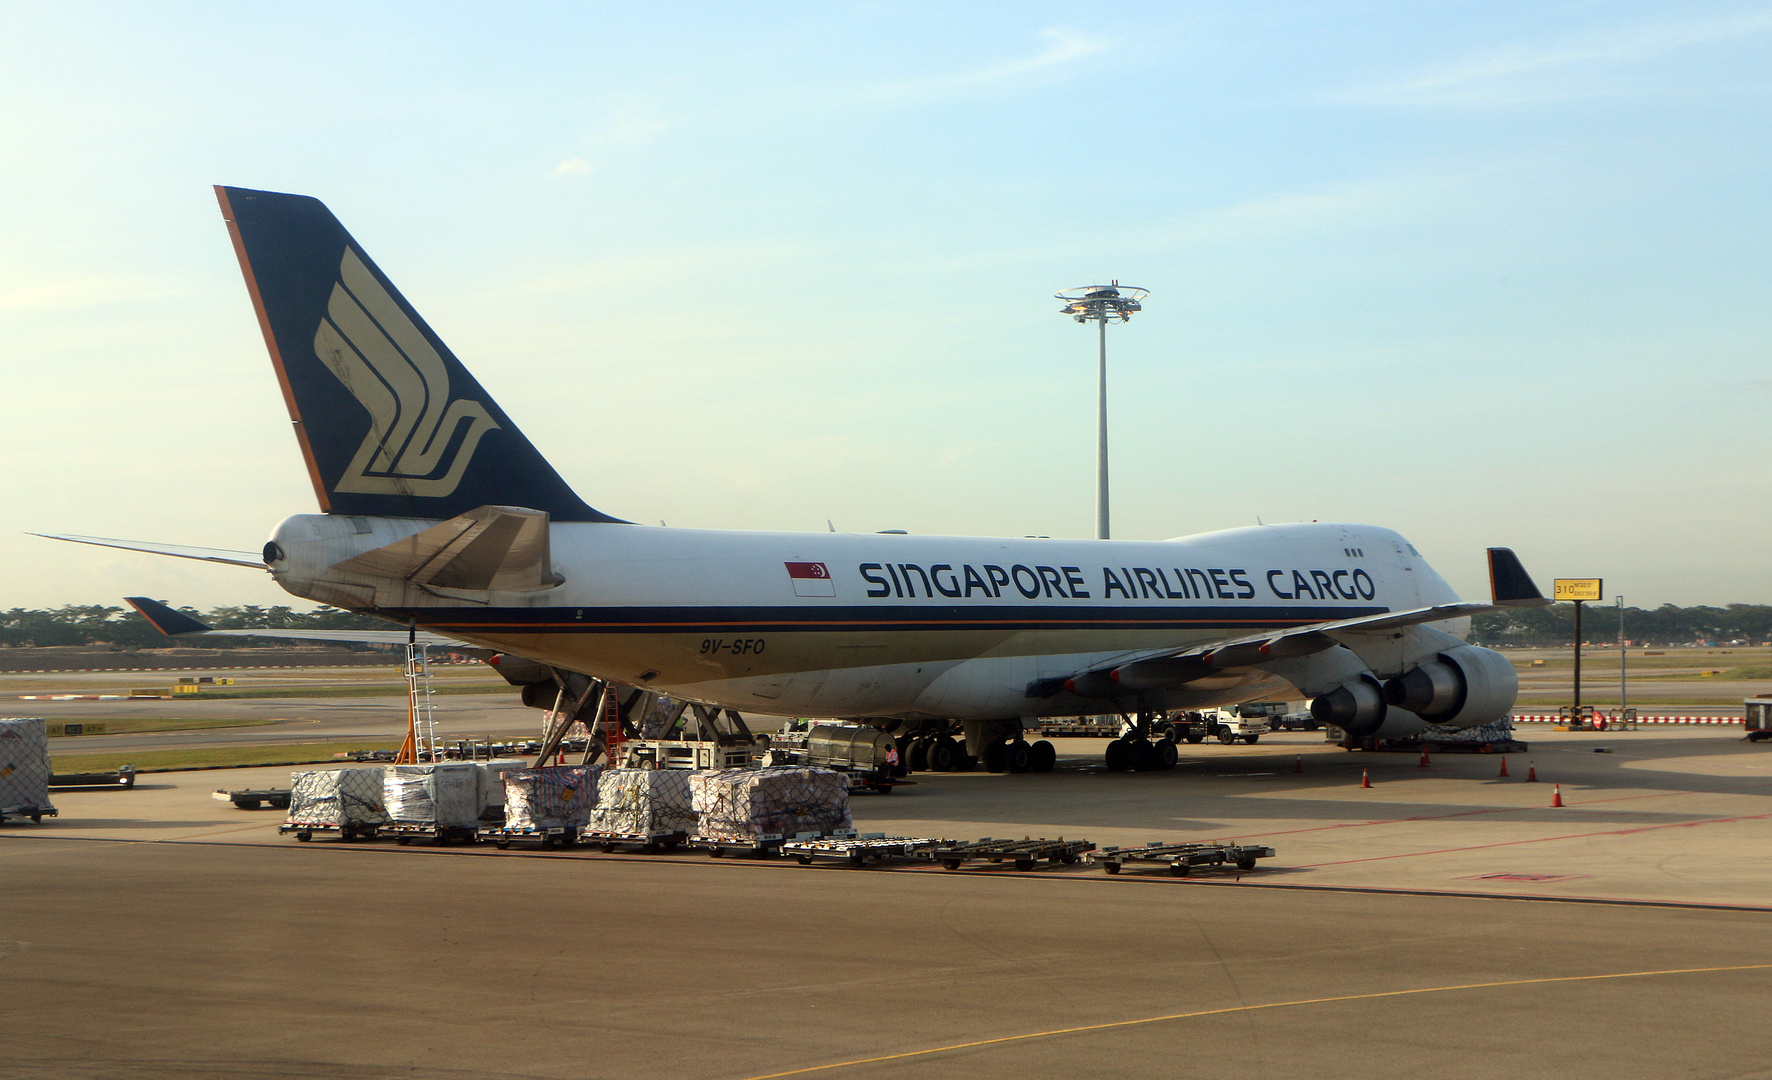 Singapore Airlines Cargo